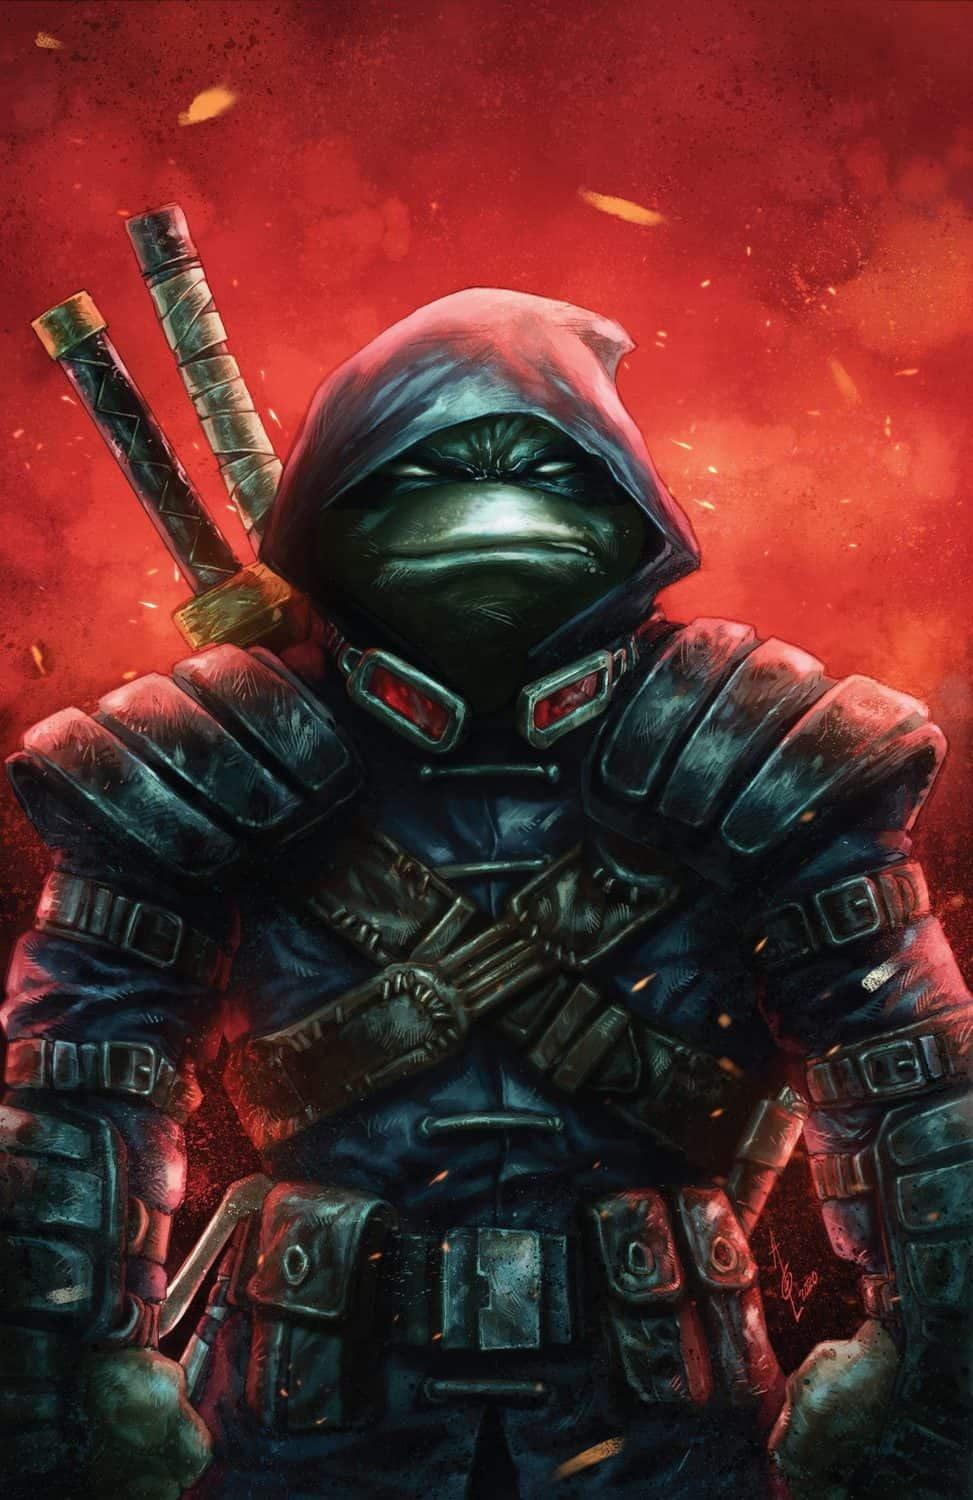 Ŧꃅᙍ ꍏ尺Ϯ Ծ ੮ℌΣ Շ乇Ɽ  Teenage Mutant Ninja Turtles The Last Ronin  The